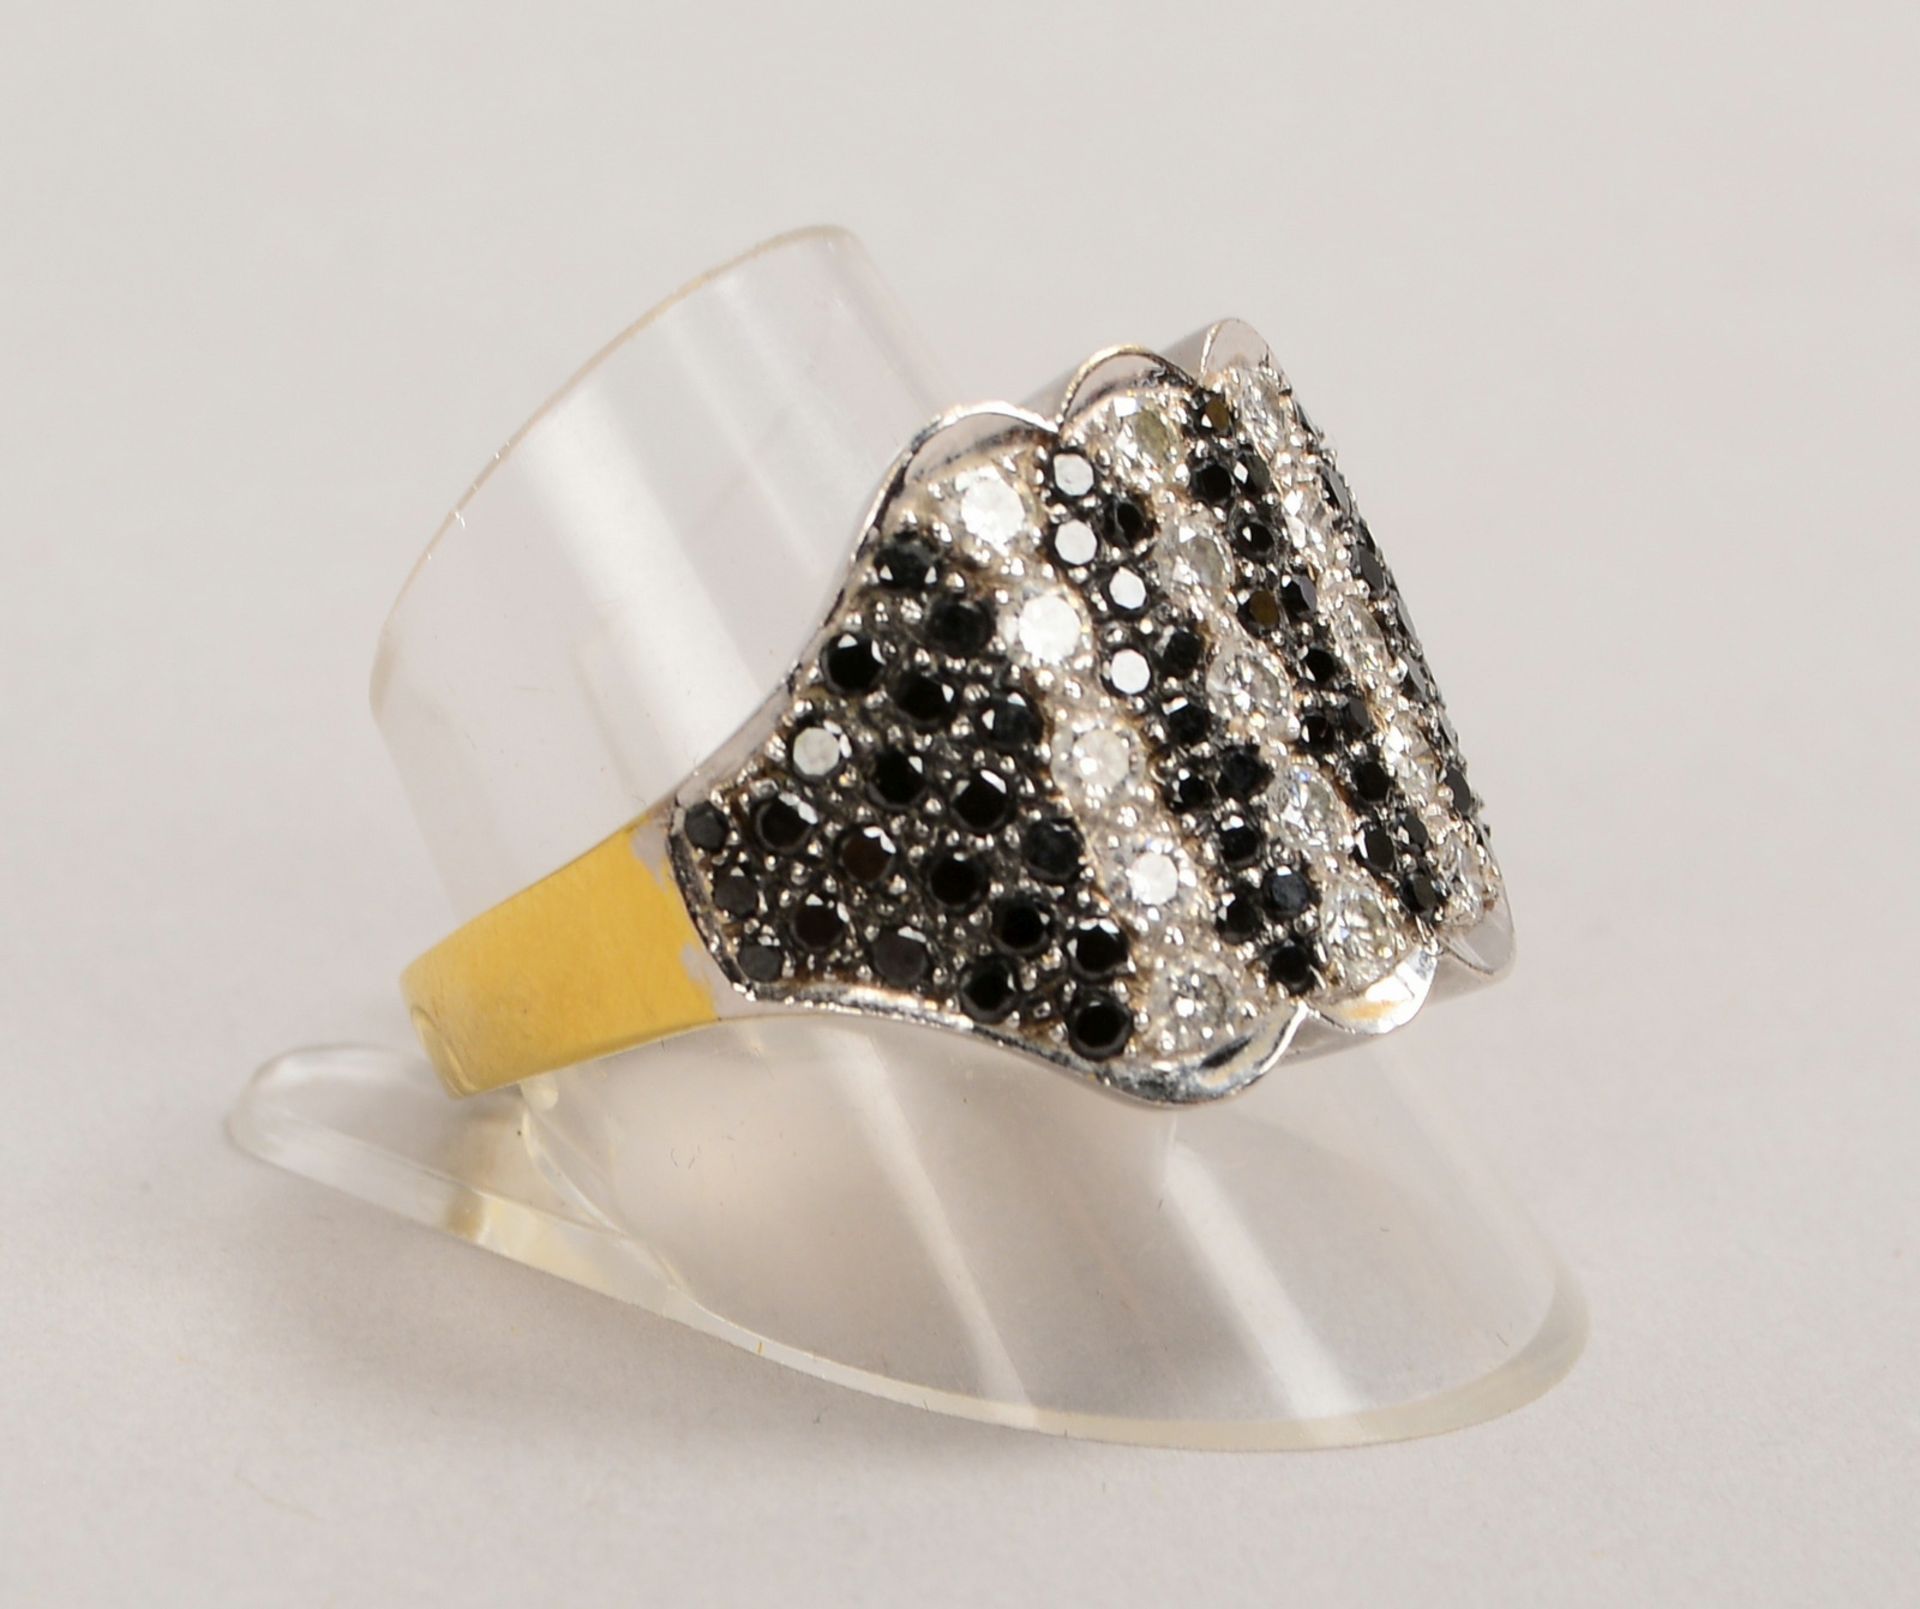 Ring, 750 GG/WG, mit Brill./ca. 1,20 ct, Farben Weiß und Schwarz; RG 64, Gew. 14,40 g